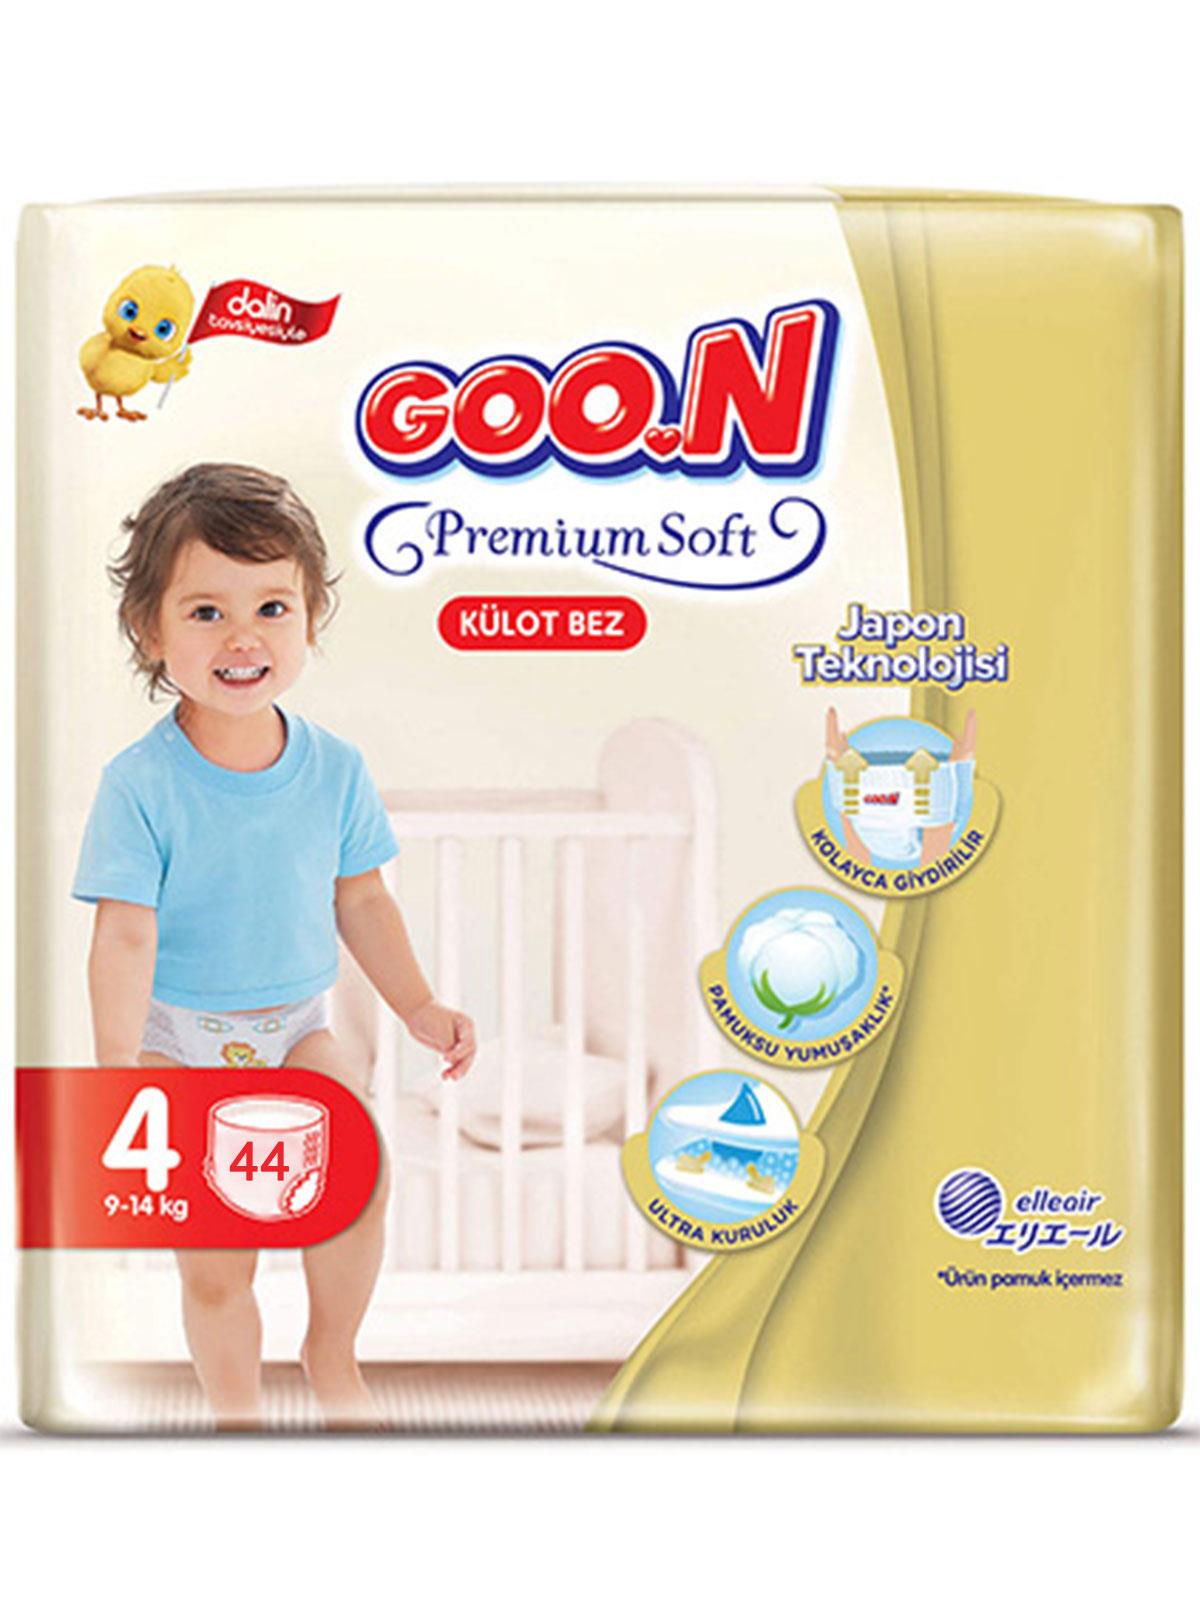 Goon Premium Soft Süper Jumbo Külot Bebek Bezi 4 Beden 44 Adet Ekonomik Paket